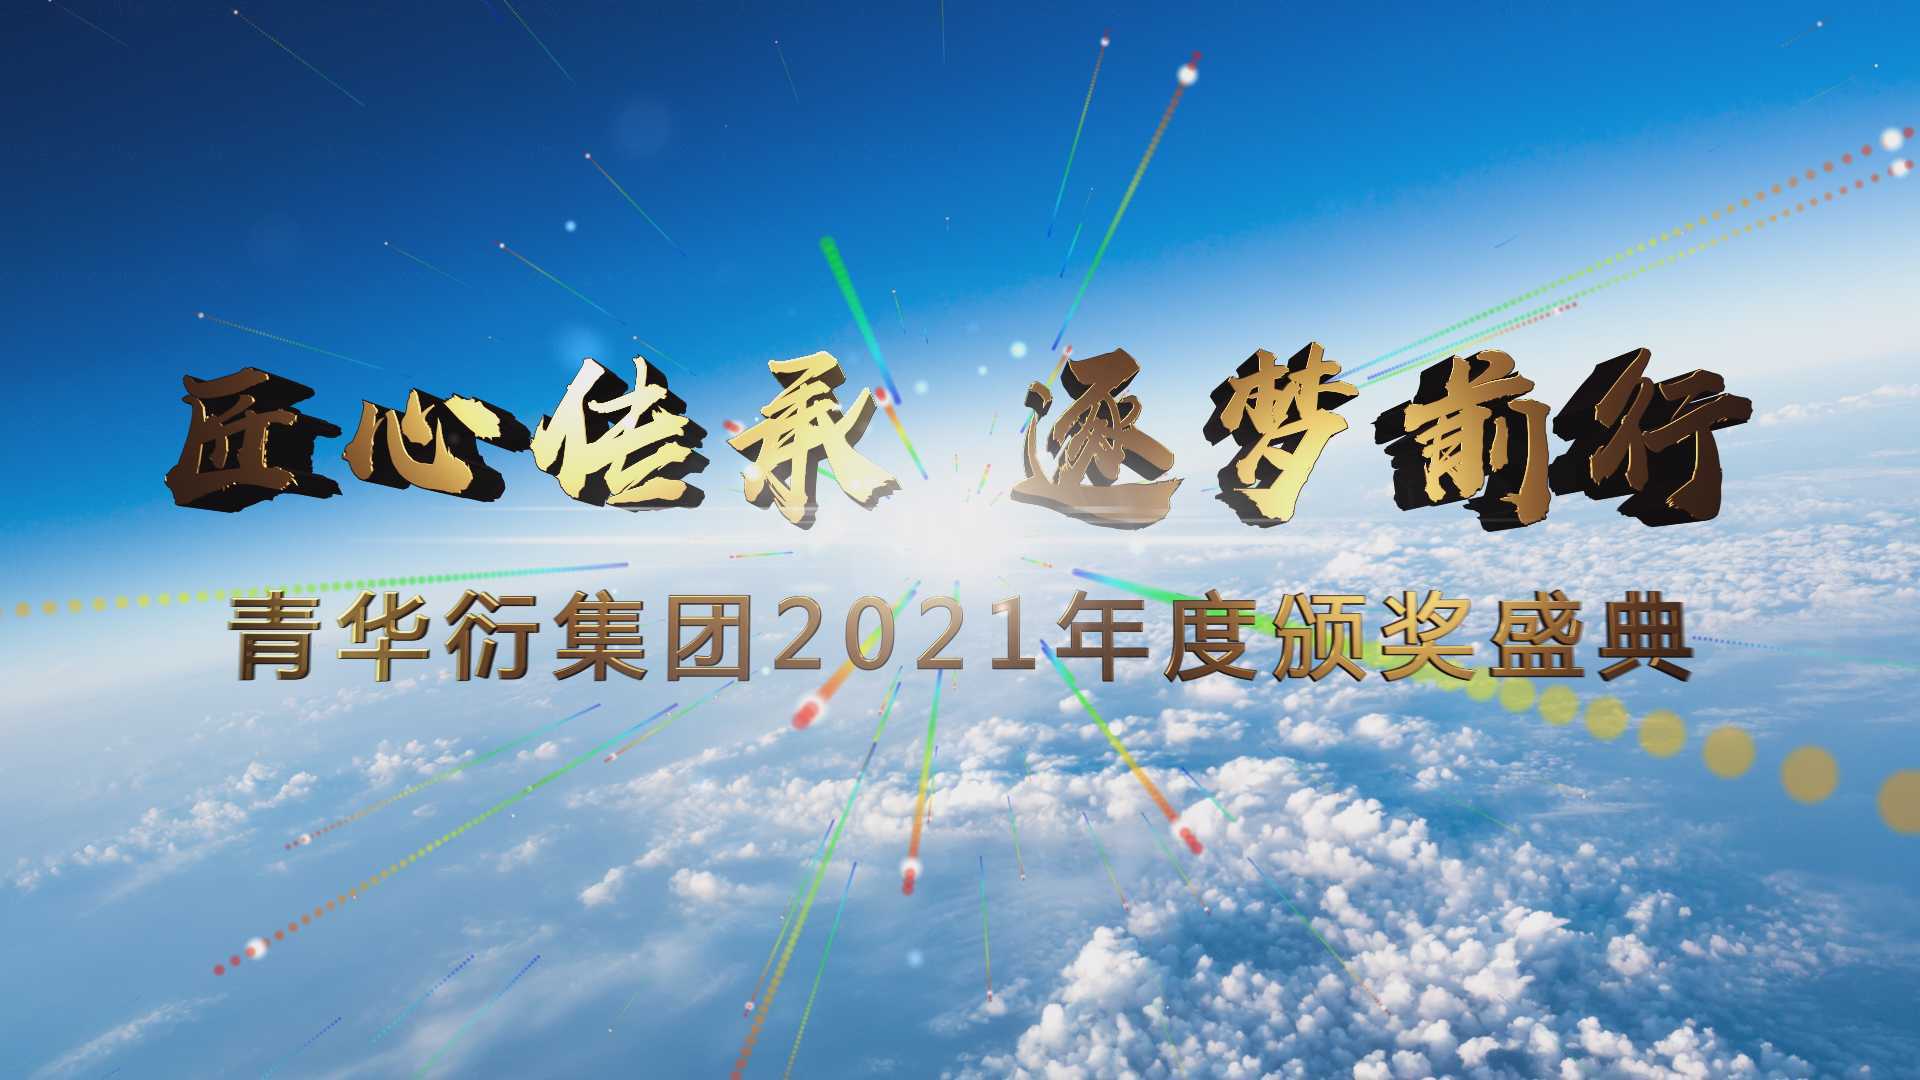 青华衍集团2021年度颁奖盛典